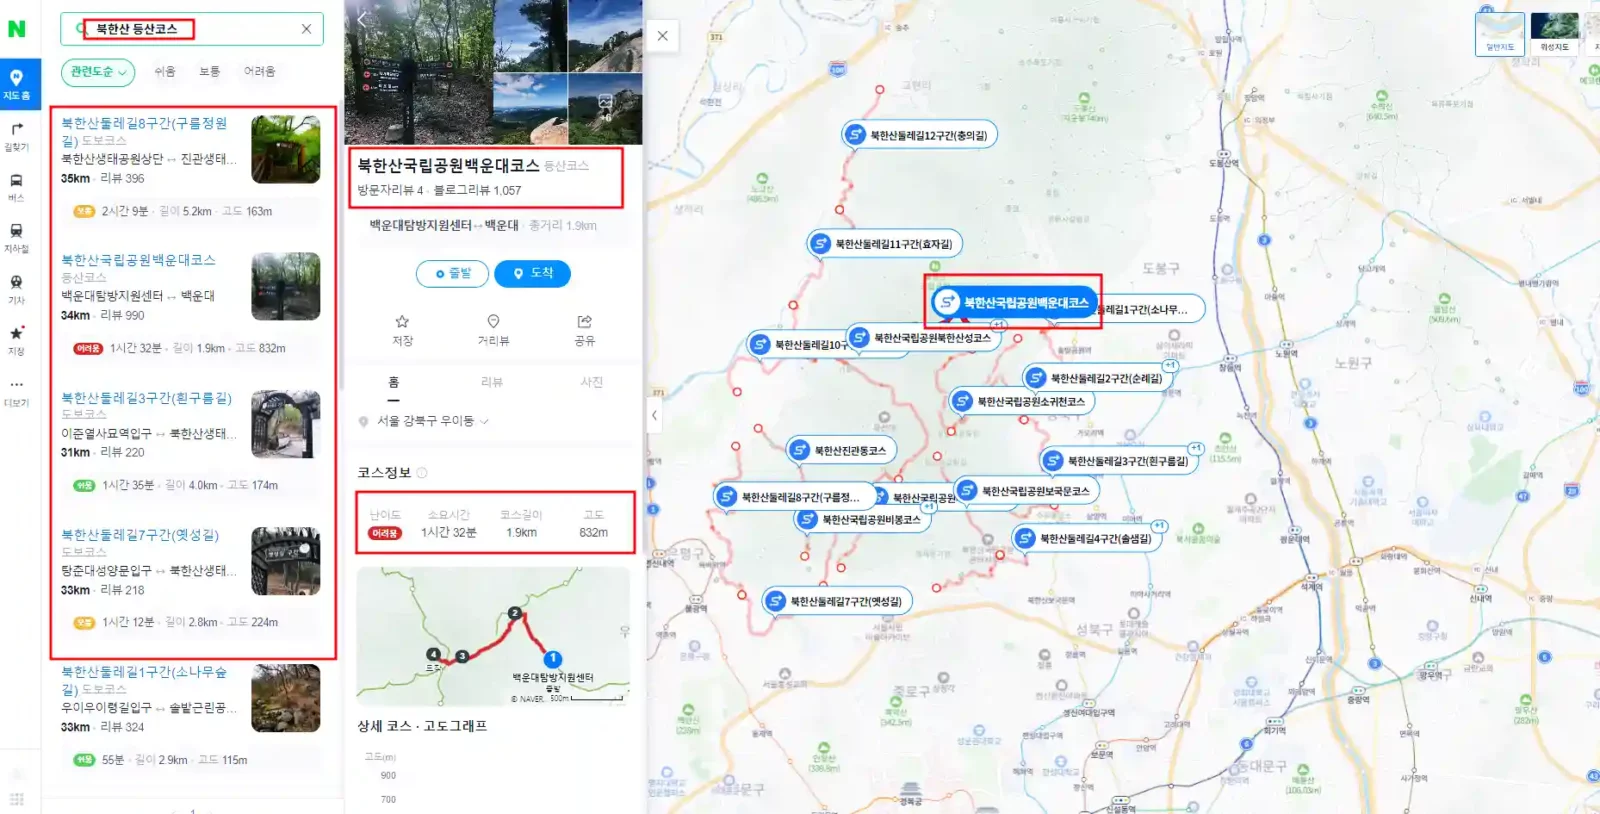 네이버 북한산 등산 코스 검색시 나오는 화면 소요시간, 길이, 고도 등 표시